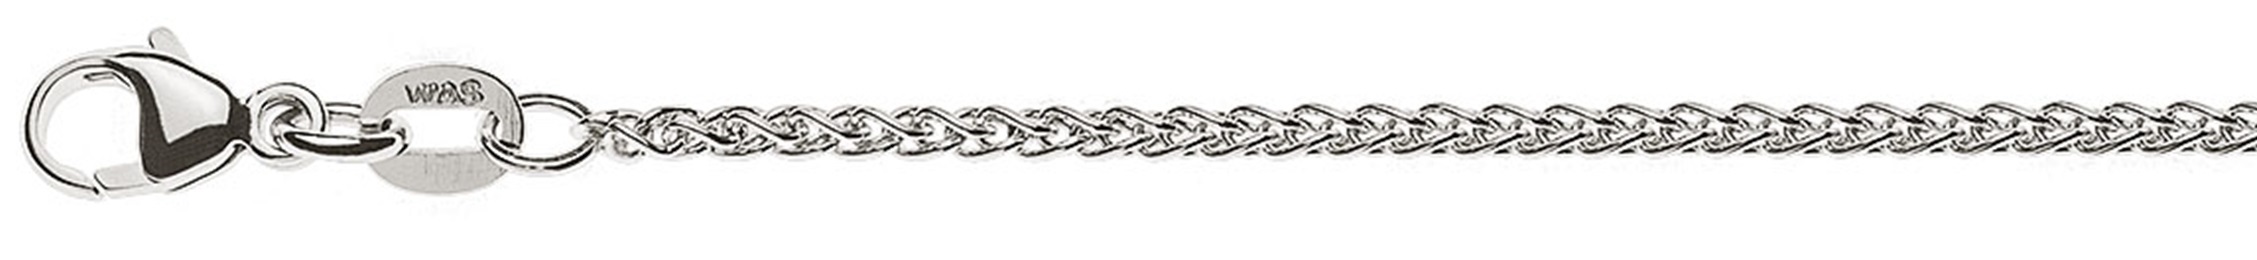 AURONOS Prestige Necklace white gold 18K cable chain 45cm 1.65mm